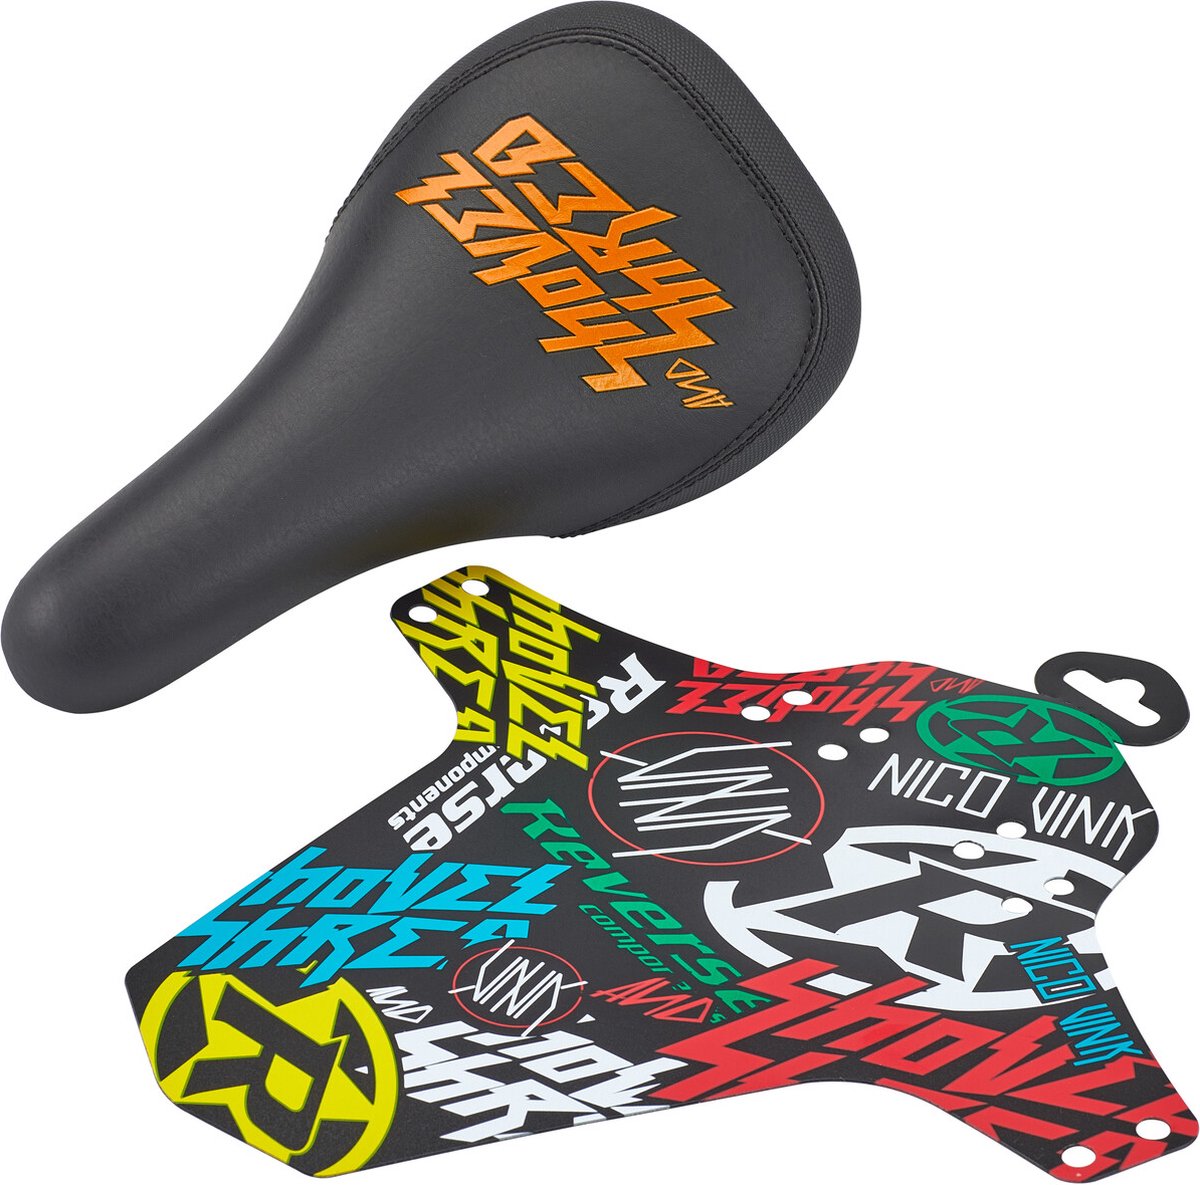 Reverse Nico Vink Shovel & Shred Zadel, zwart/oranje